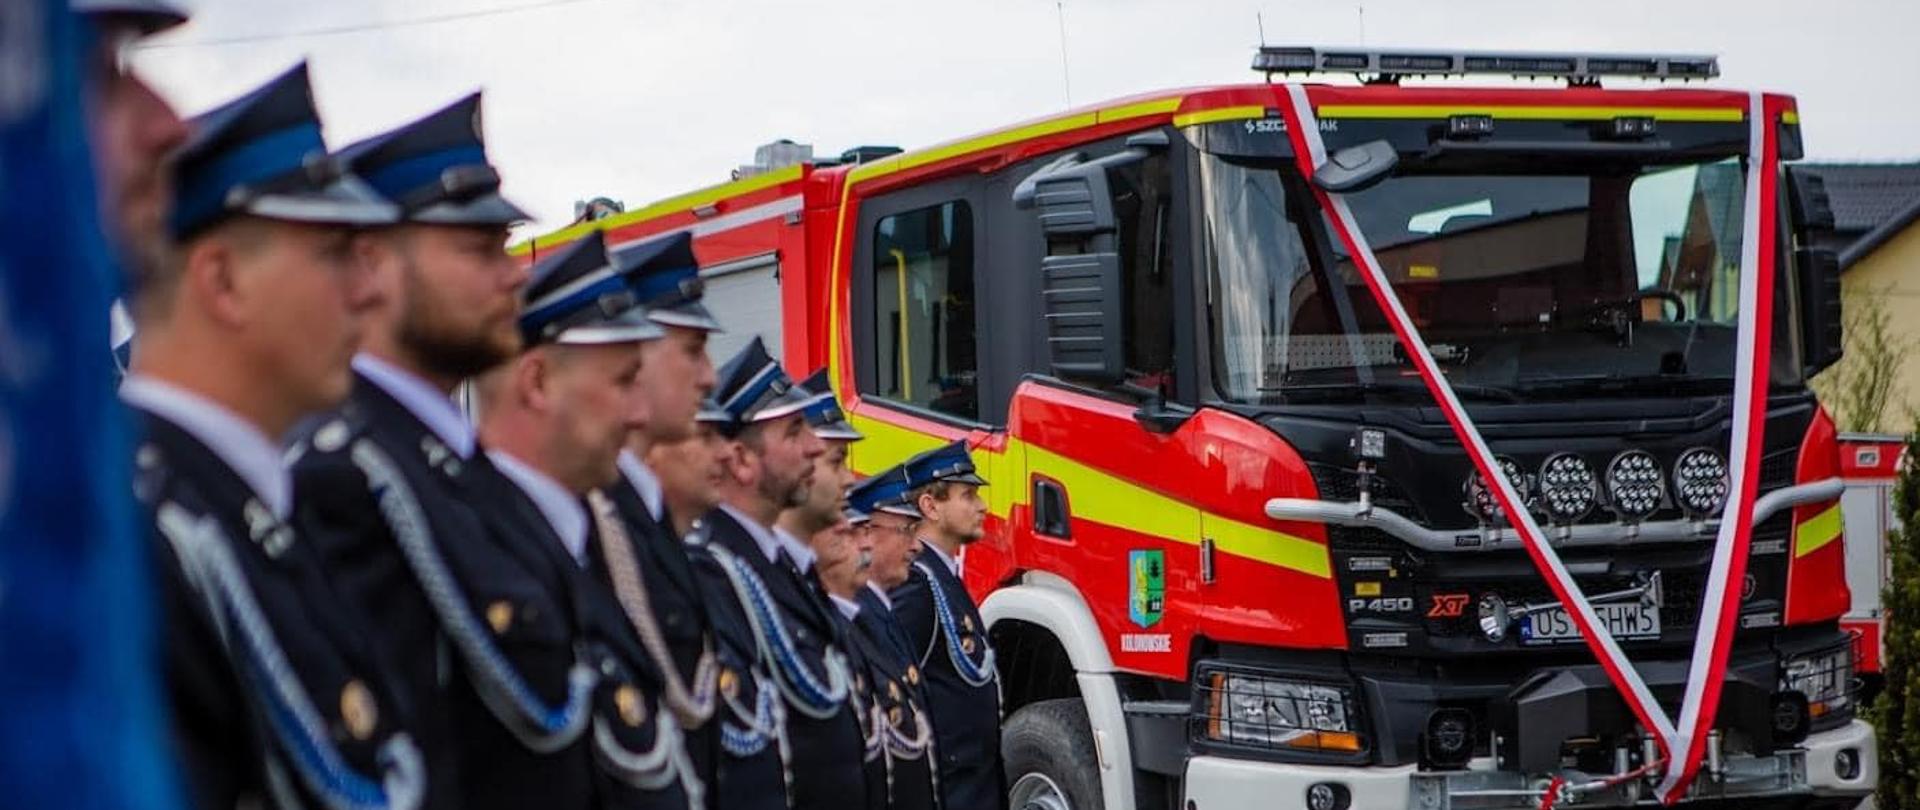 Na zdjęciu znajdują się strażacy ustawieni w szeregu a w tel stoi samochód strażacki